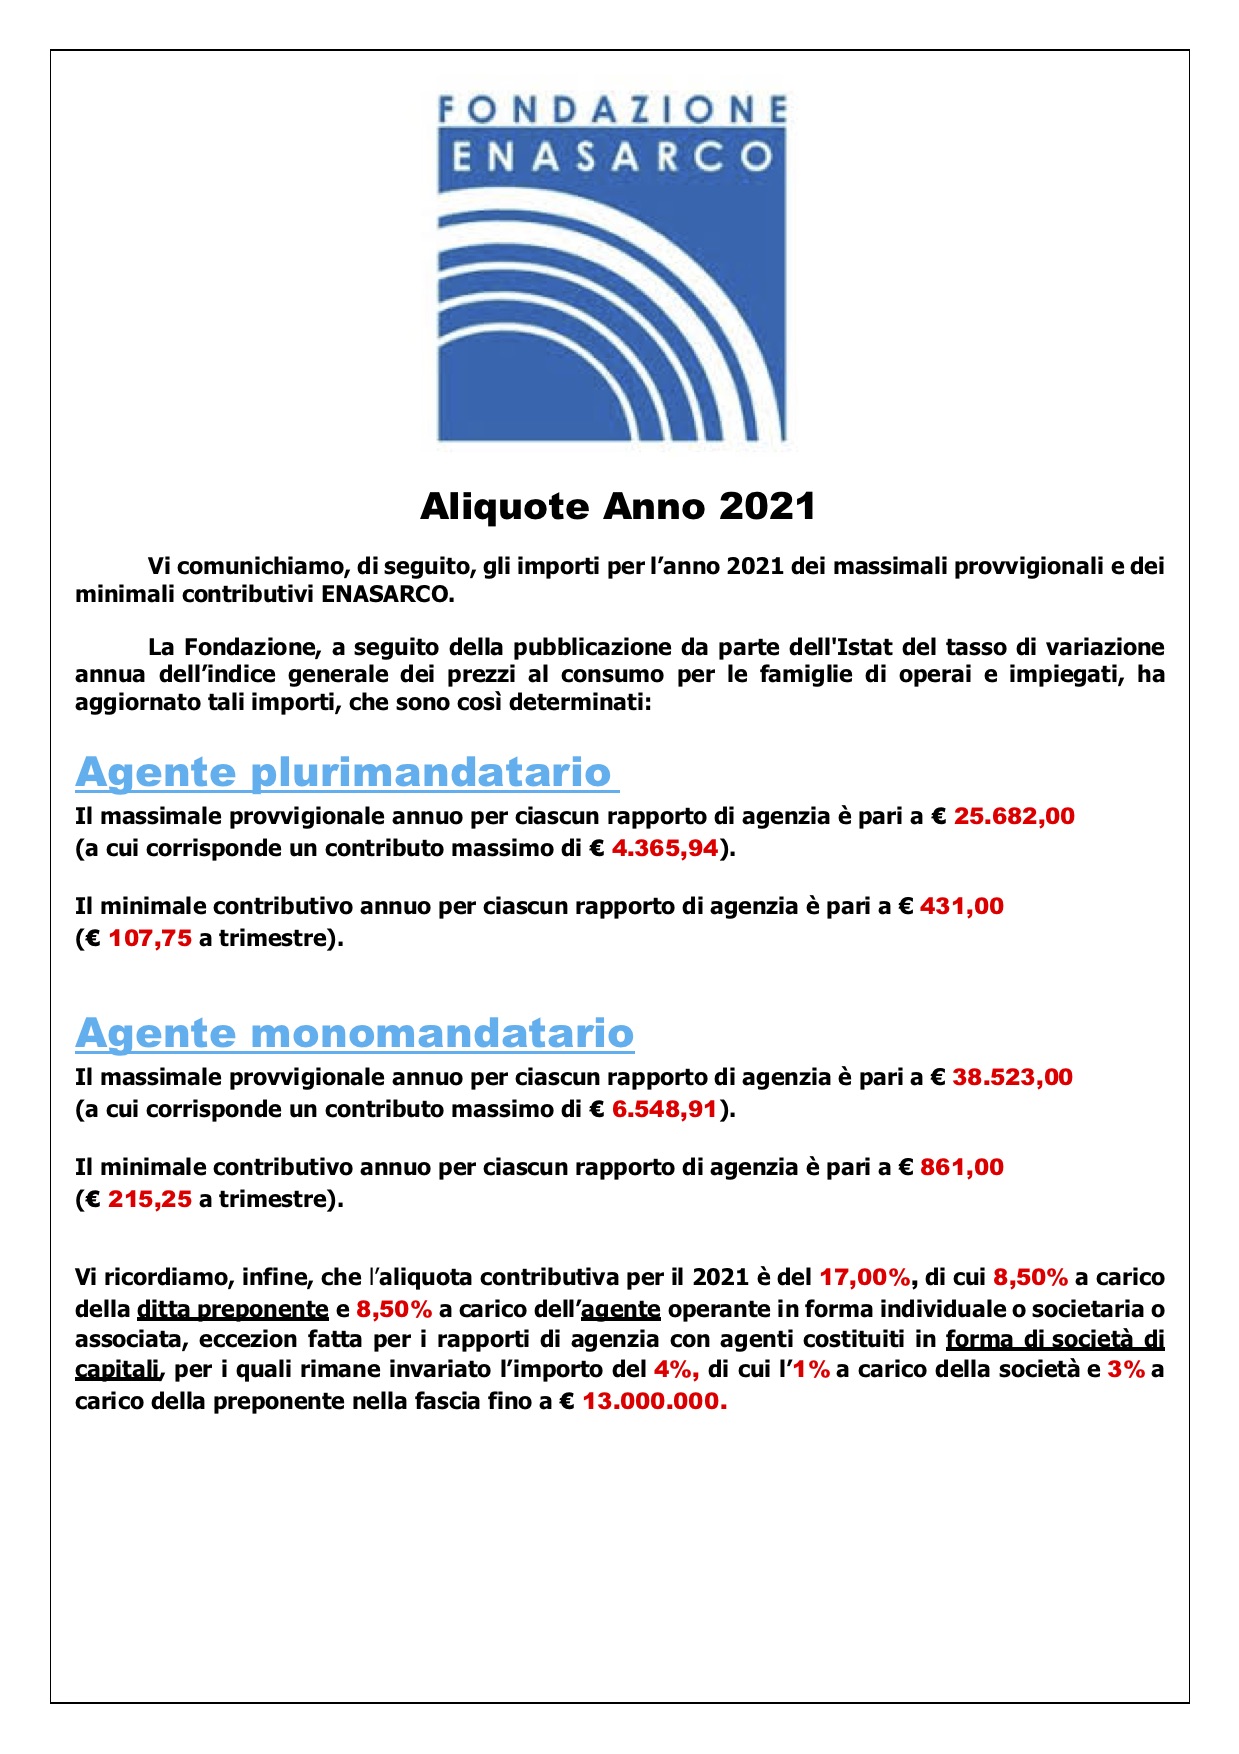 ALIQUOTE ENASARCO 2021